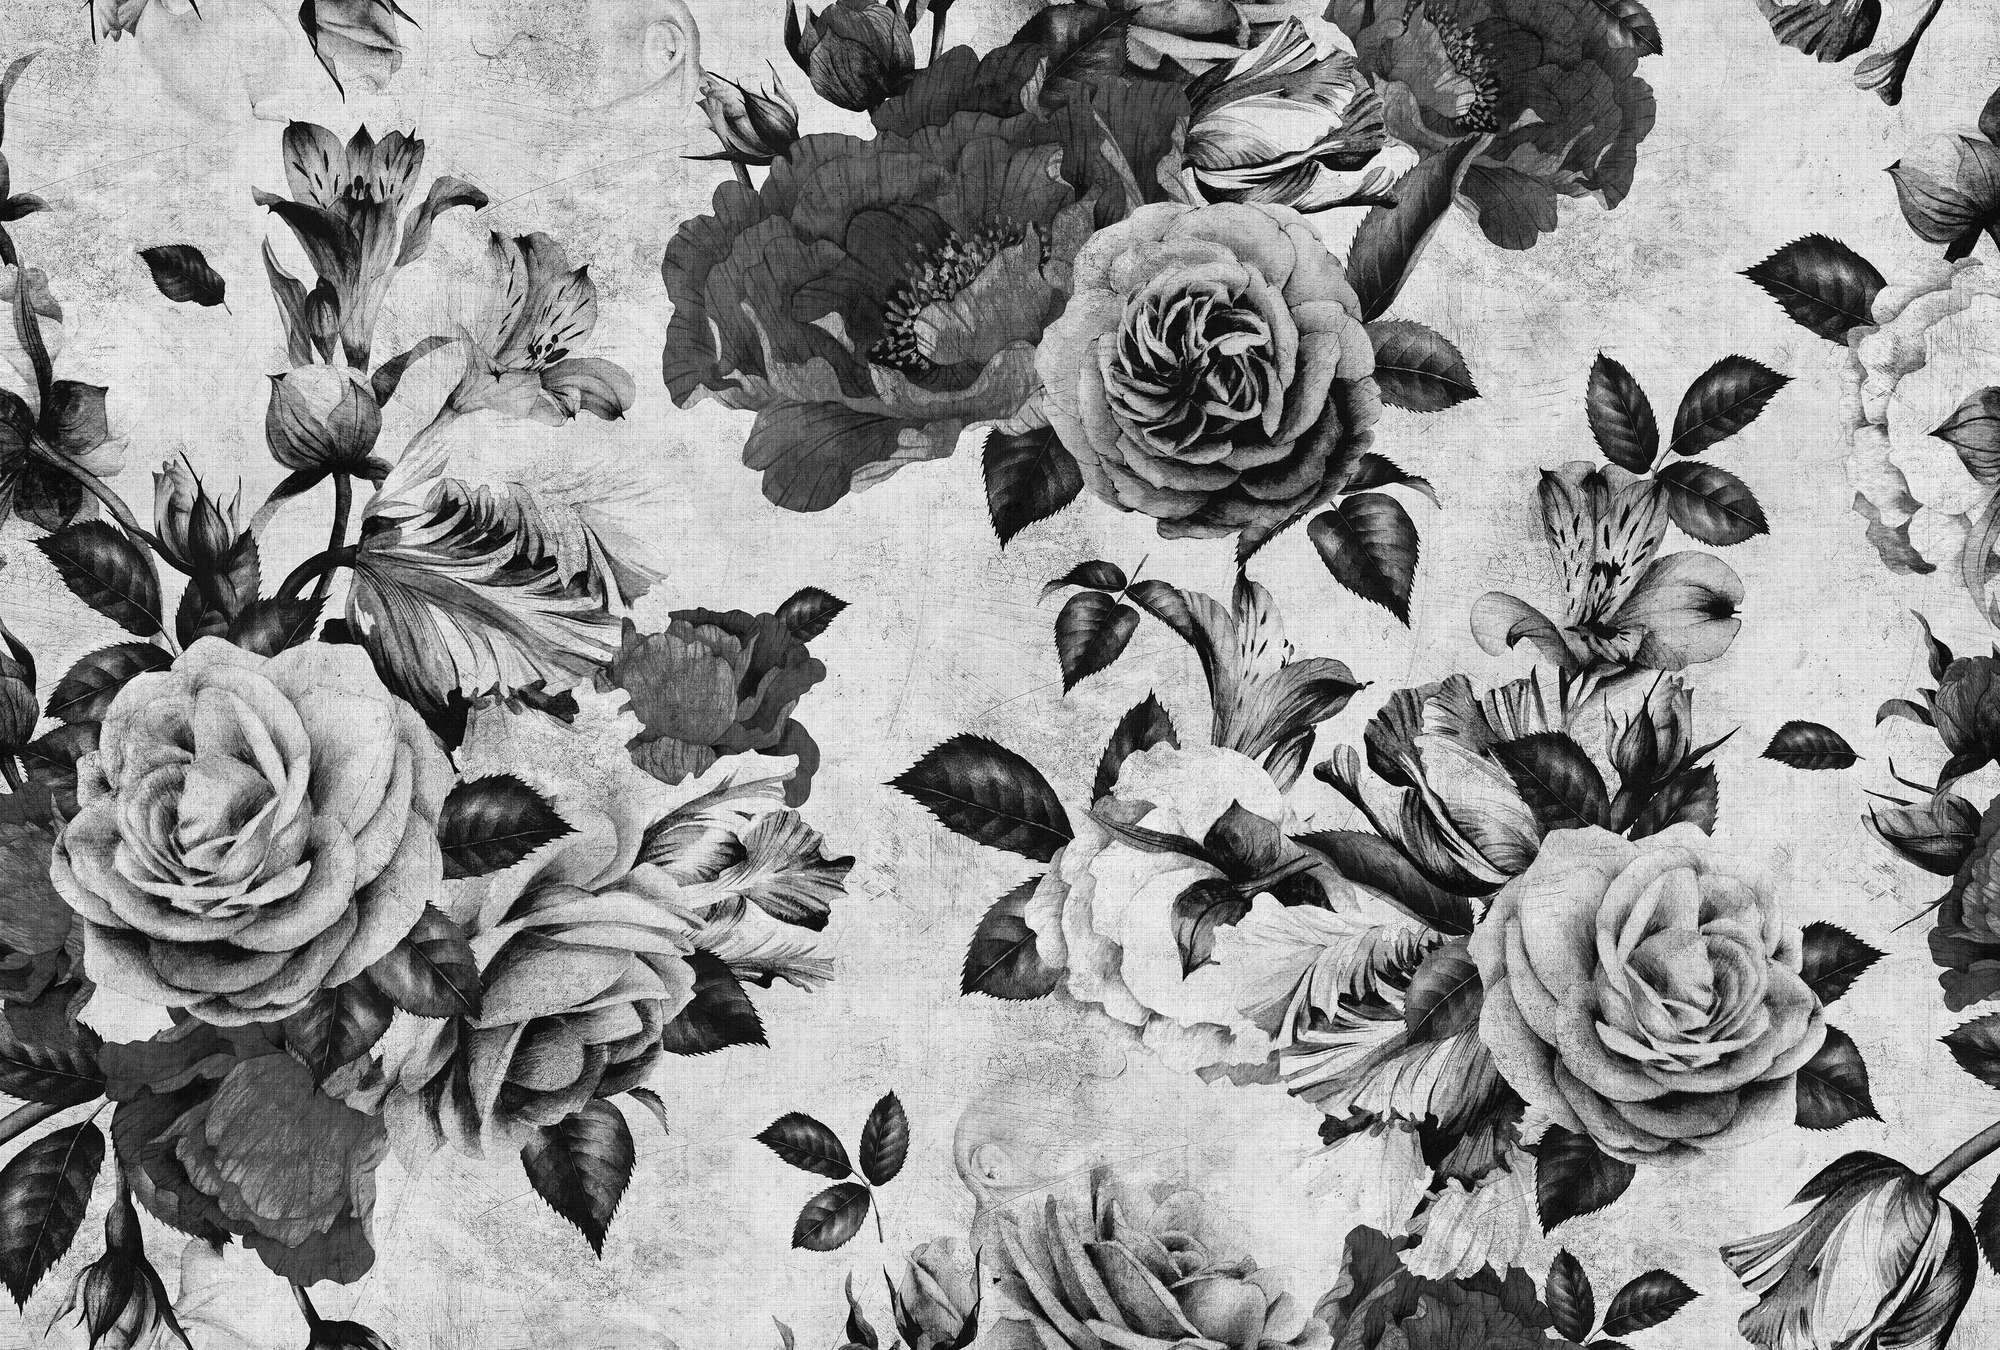             Spanish rose 1 - Carta da parati a rose con fiori bianchi e neri in struttura di lino naturale - Grigio, Nero | Premium smooth fleece
        